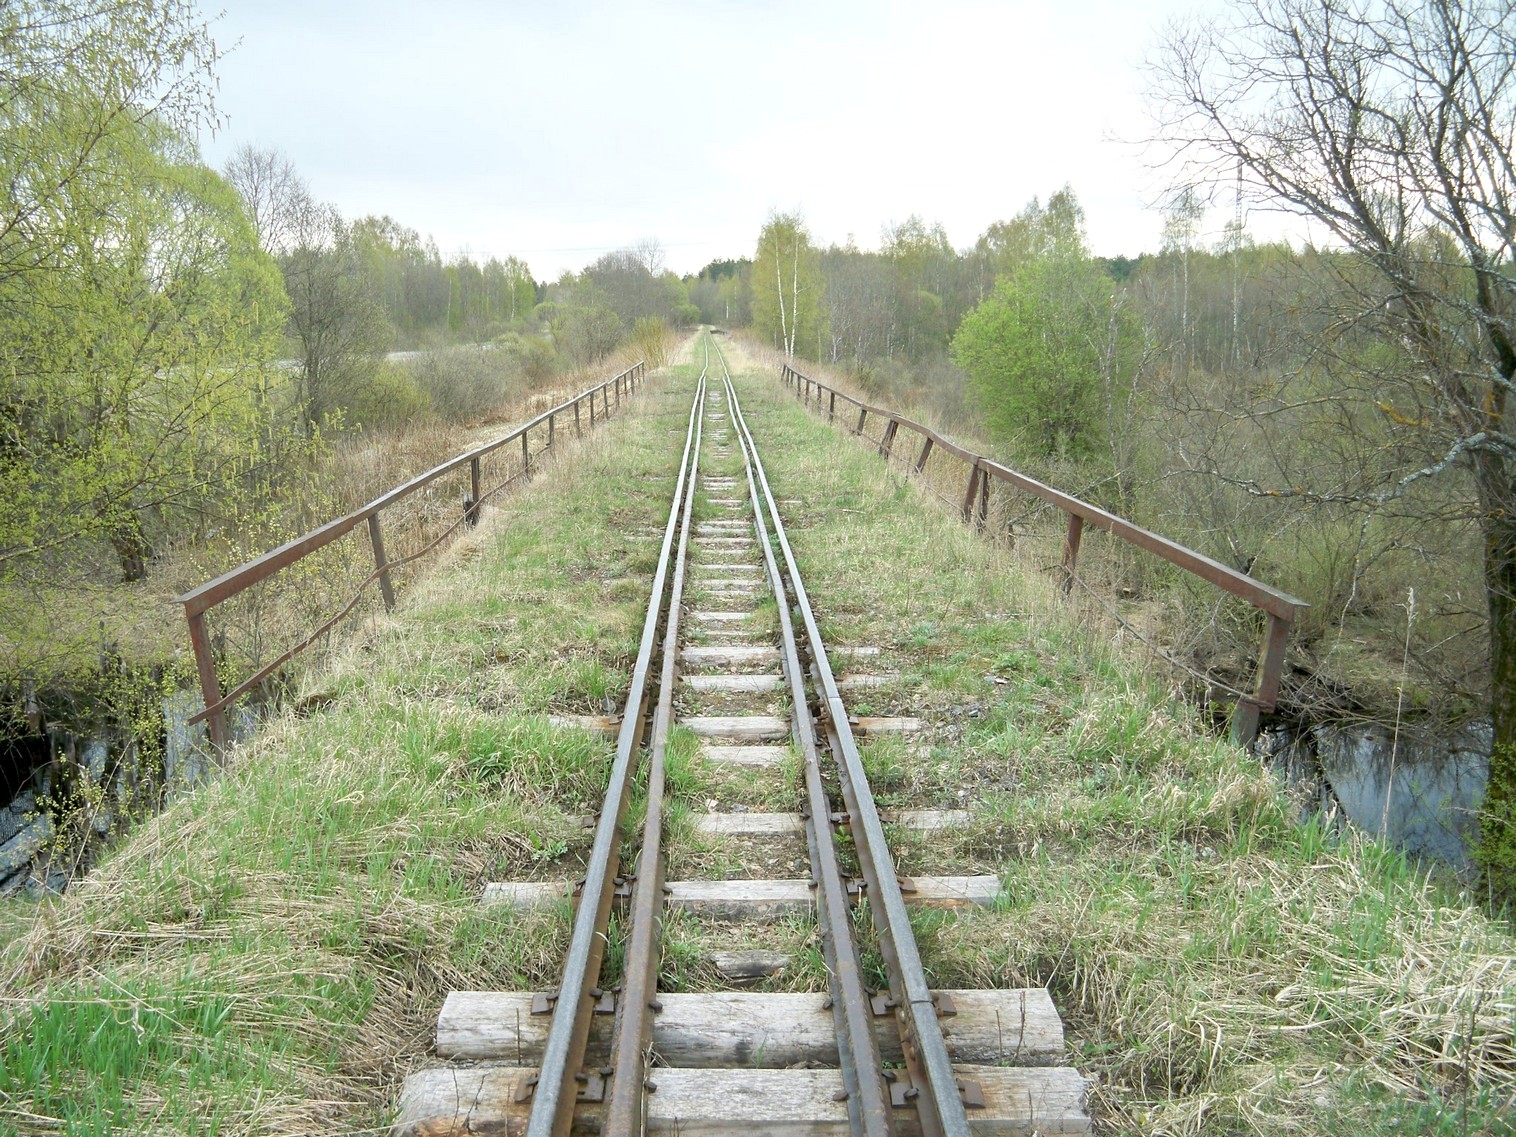 Узкоколейная железная дорога Васильевского предприятия промышленного железнодорожного транспорта  — фотографии, сделанные в 2014 году (часть 12)